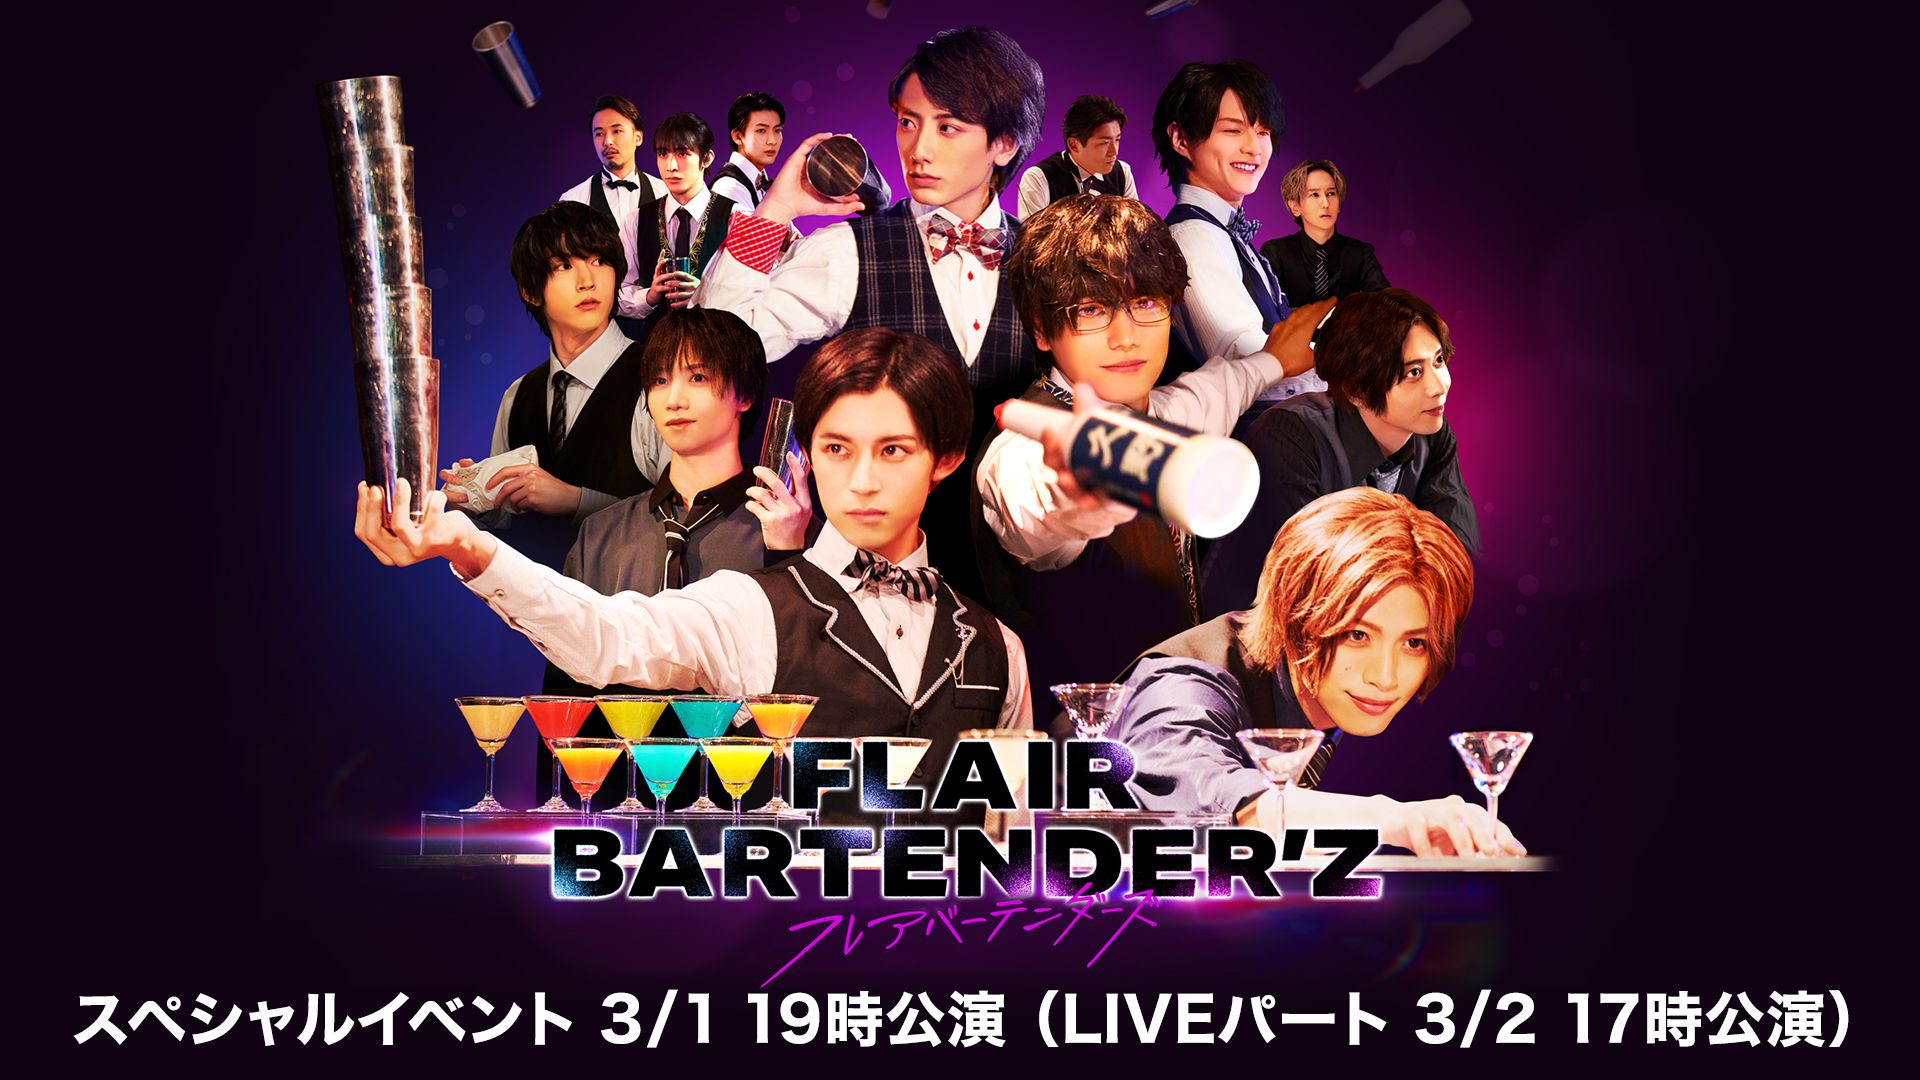 FLAIR BARTENDER’Zスペシャルイベント 3/1 19時公演(LIVEパート 3/2 17時公演)